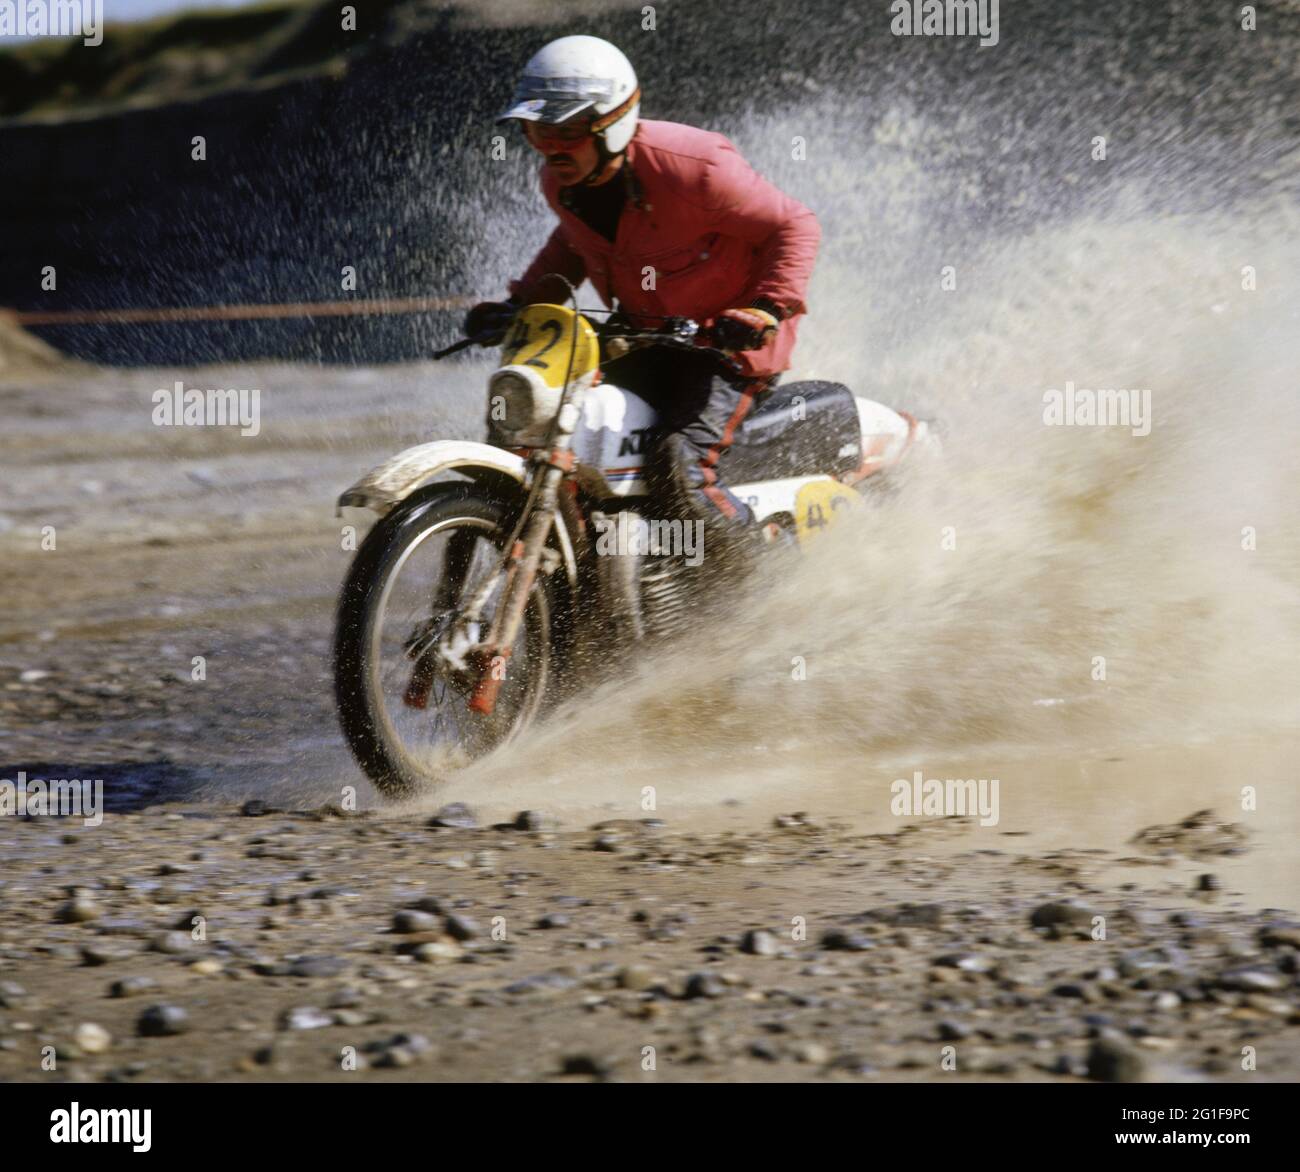 Sport, Motorrad, Cross Country Drive, 70er Jahre, ZUSÄTZLICHE-RECHTE-FREIGABE-INFO-NICHT-VERFÜGBAR Stockfoto